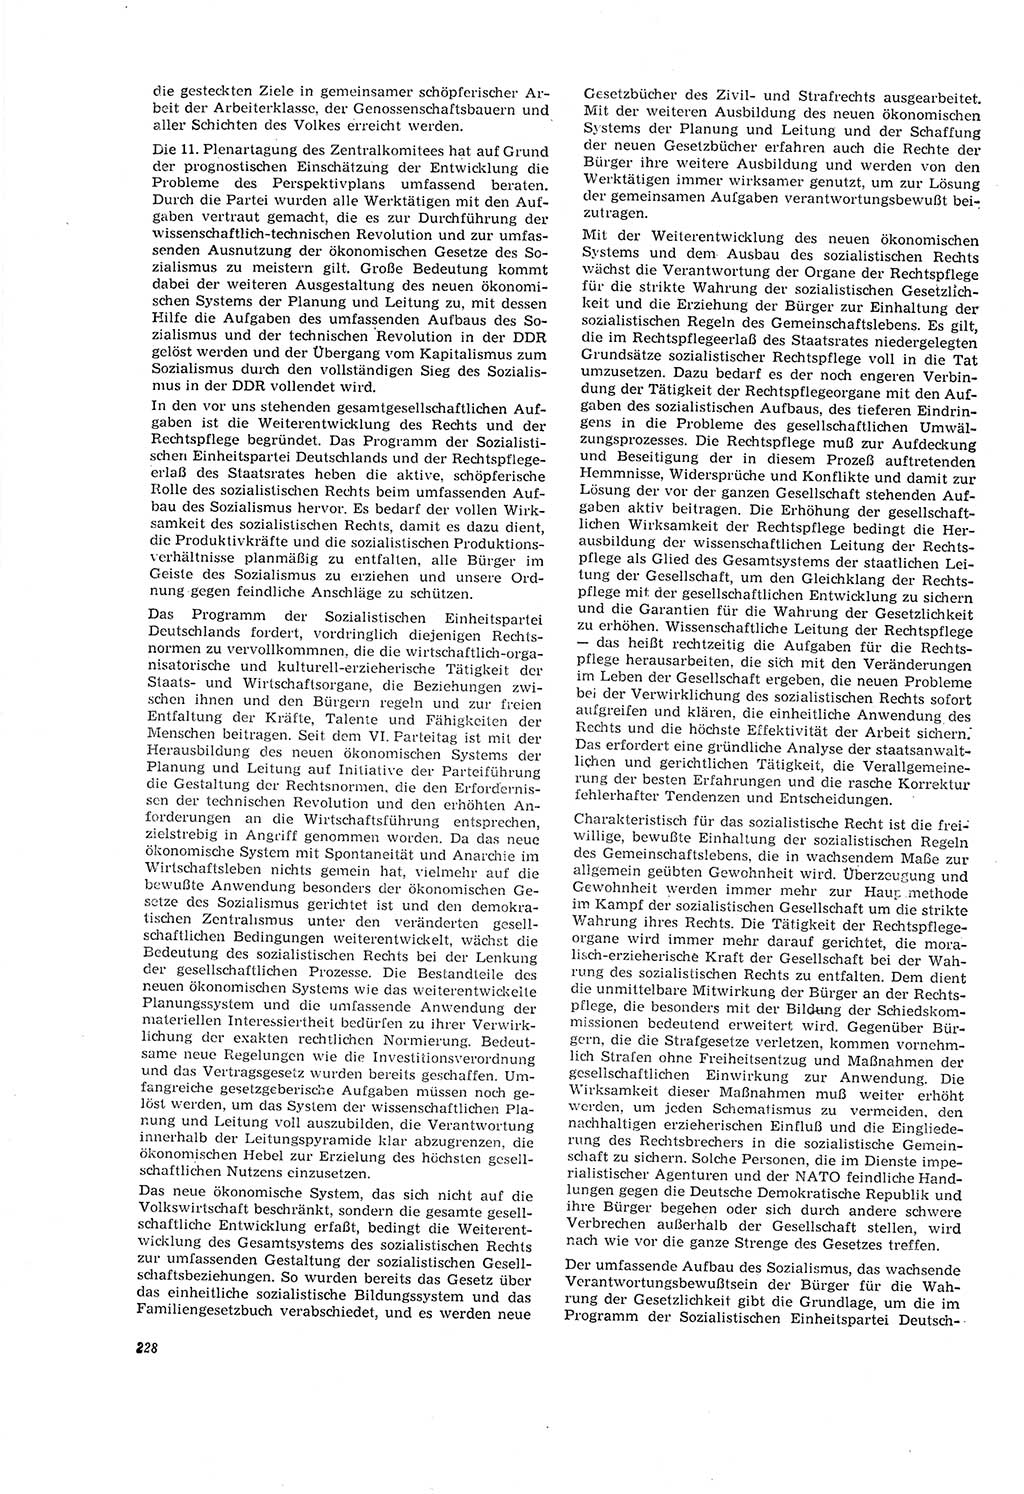 Neue Justiz (NJ), Zeitschrift für Recht und Rechtswissenschaft [Deutsche Demokratische Republik (DDR)], 20. Jahrgang 1966, Seite 228 (NJ DDR 1966, S. 228)